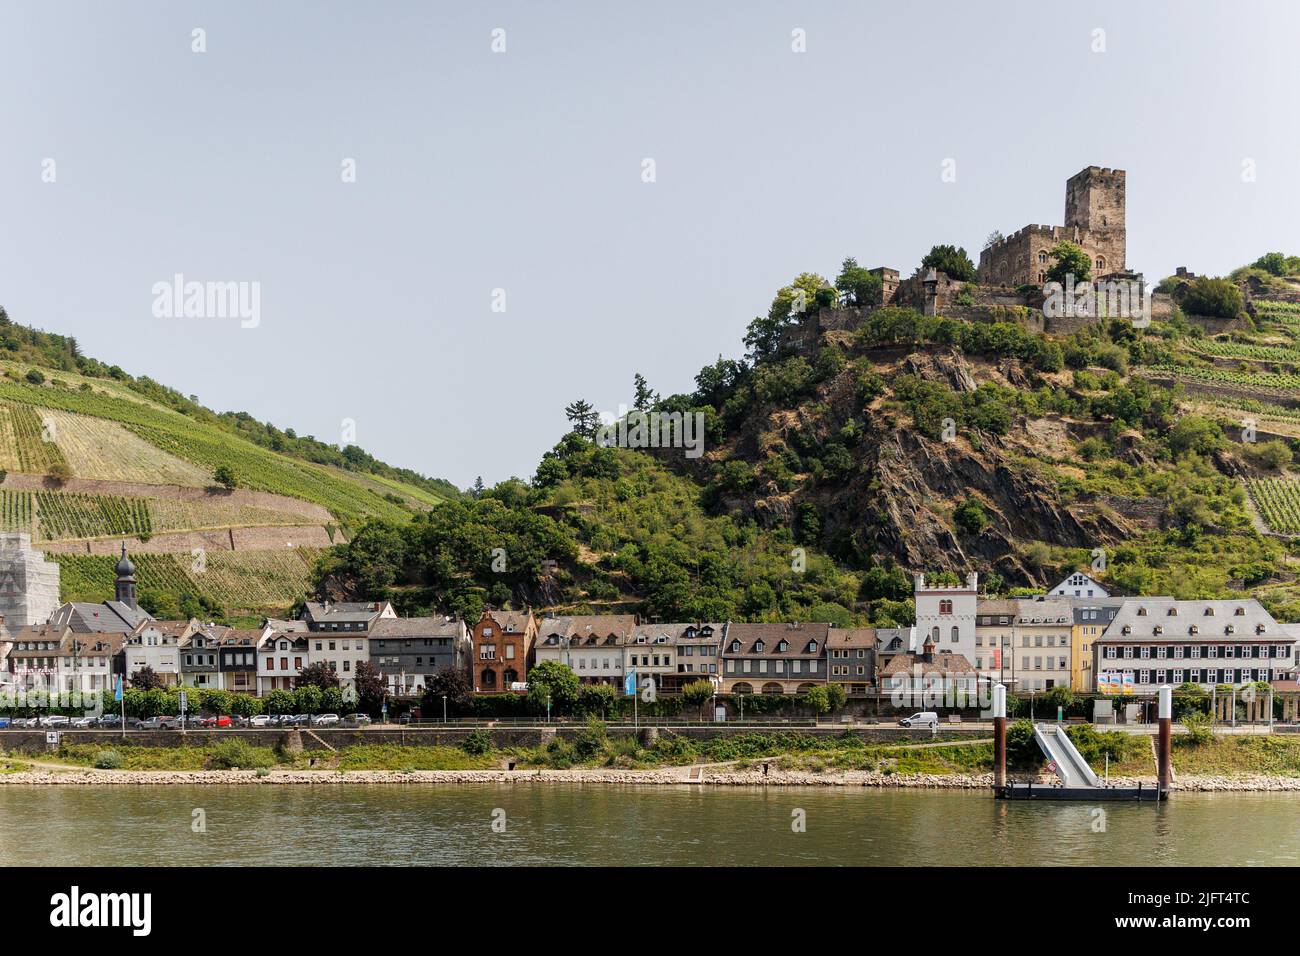 La ville de Kaub (Caub) sur le Rhin avec terrasses de vin / vignobles et Château Gutenfels en arrière-plan. Banque D'Images